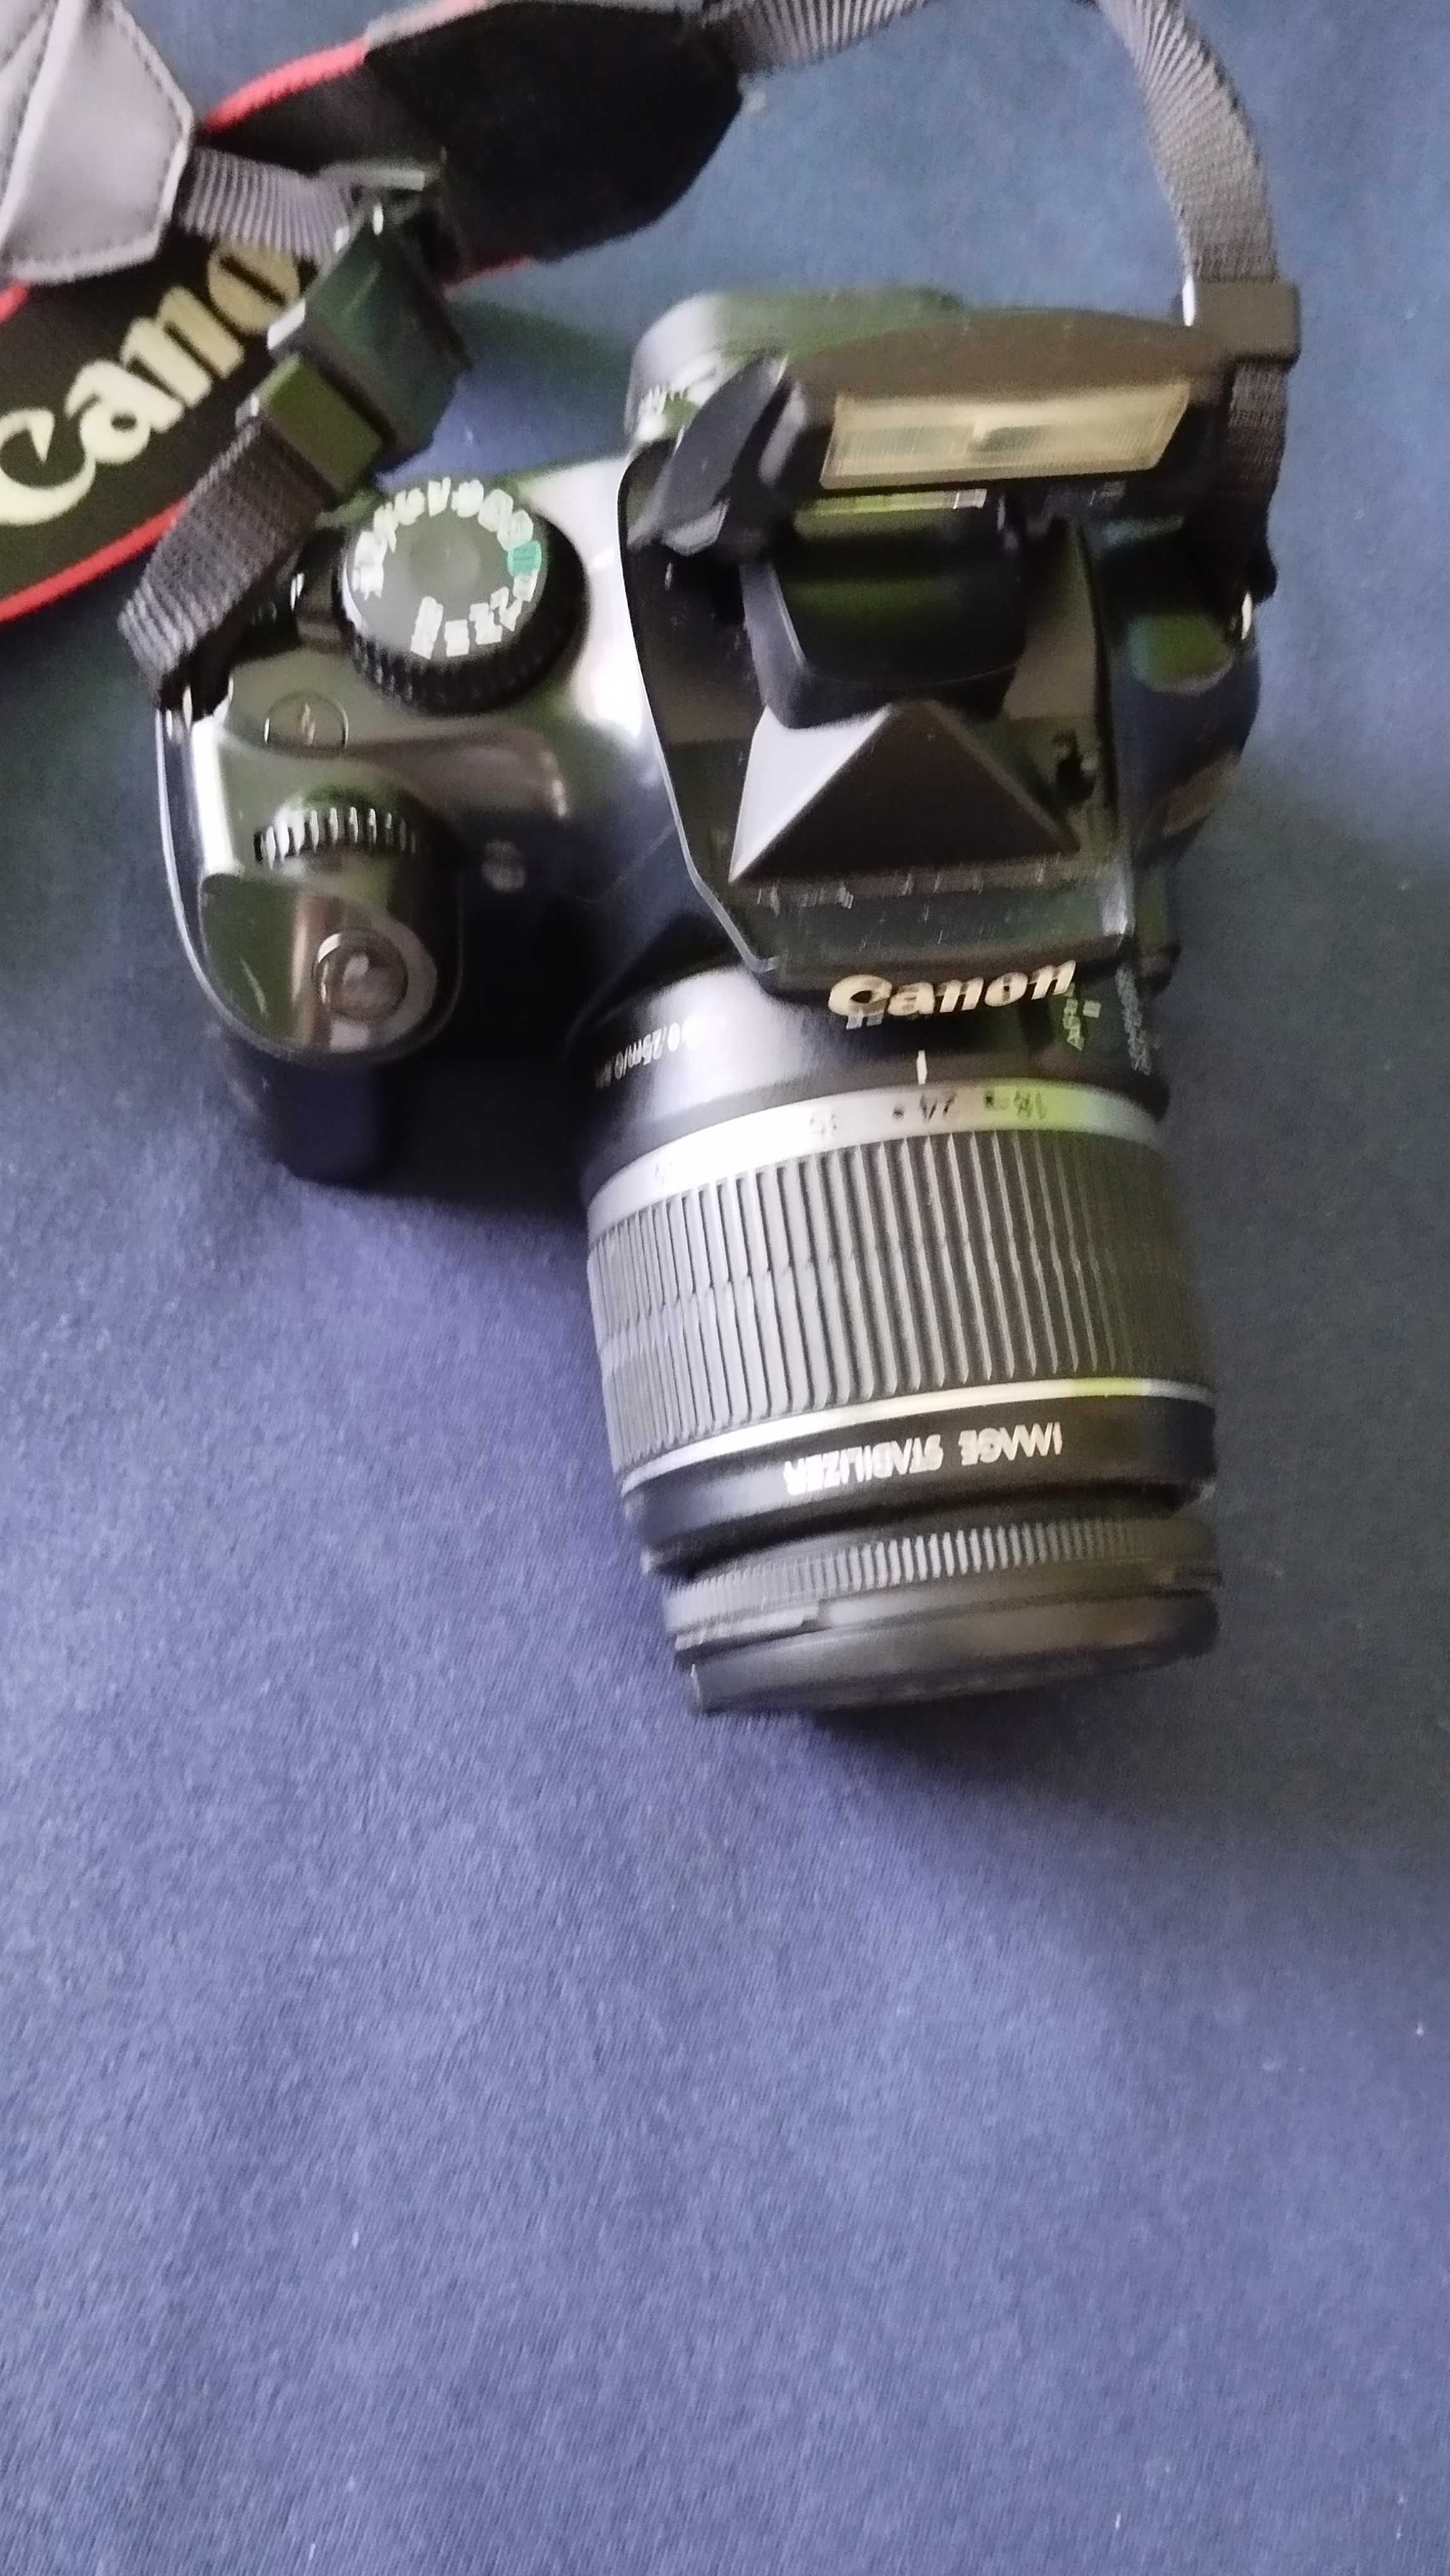 Canon EOS 1100D wraz z obiektywem 18-55mm